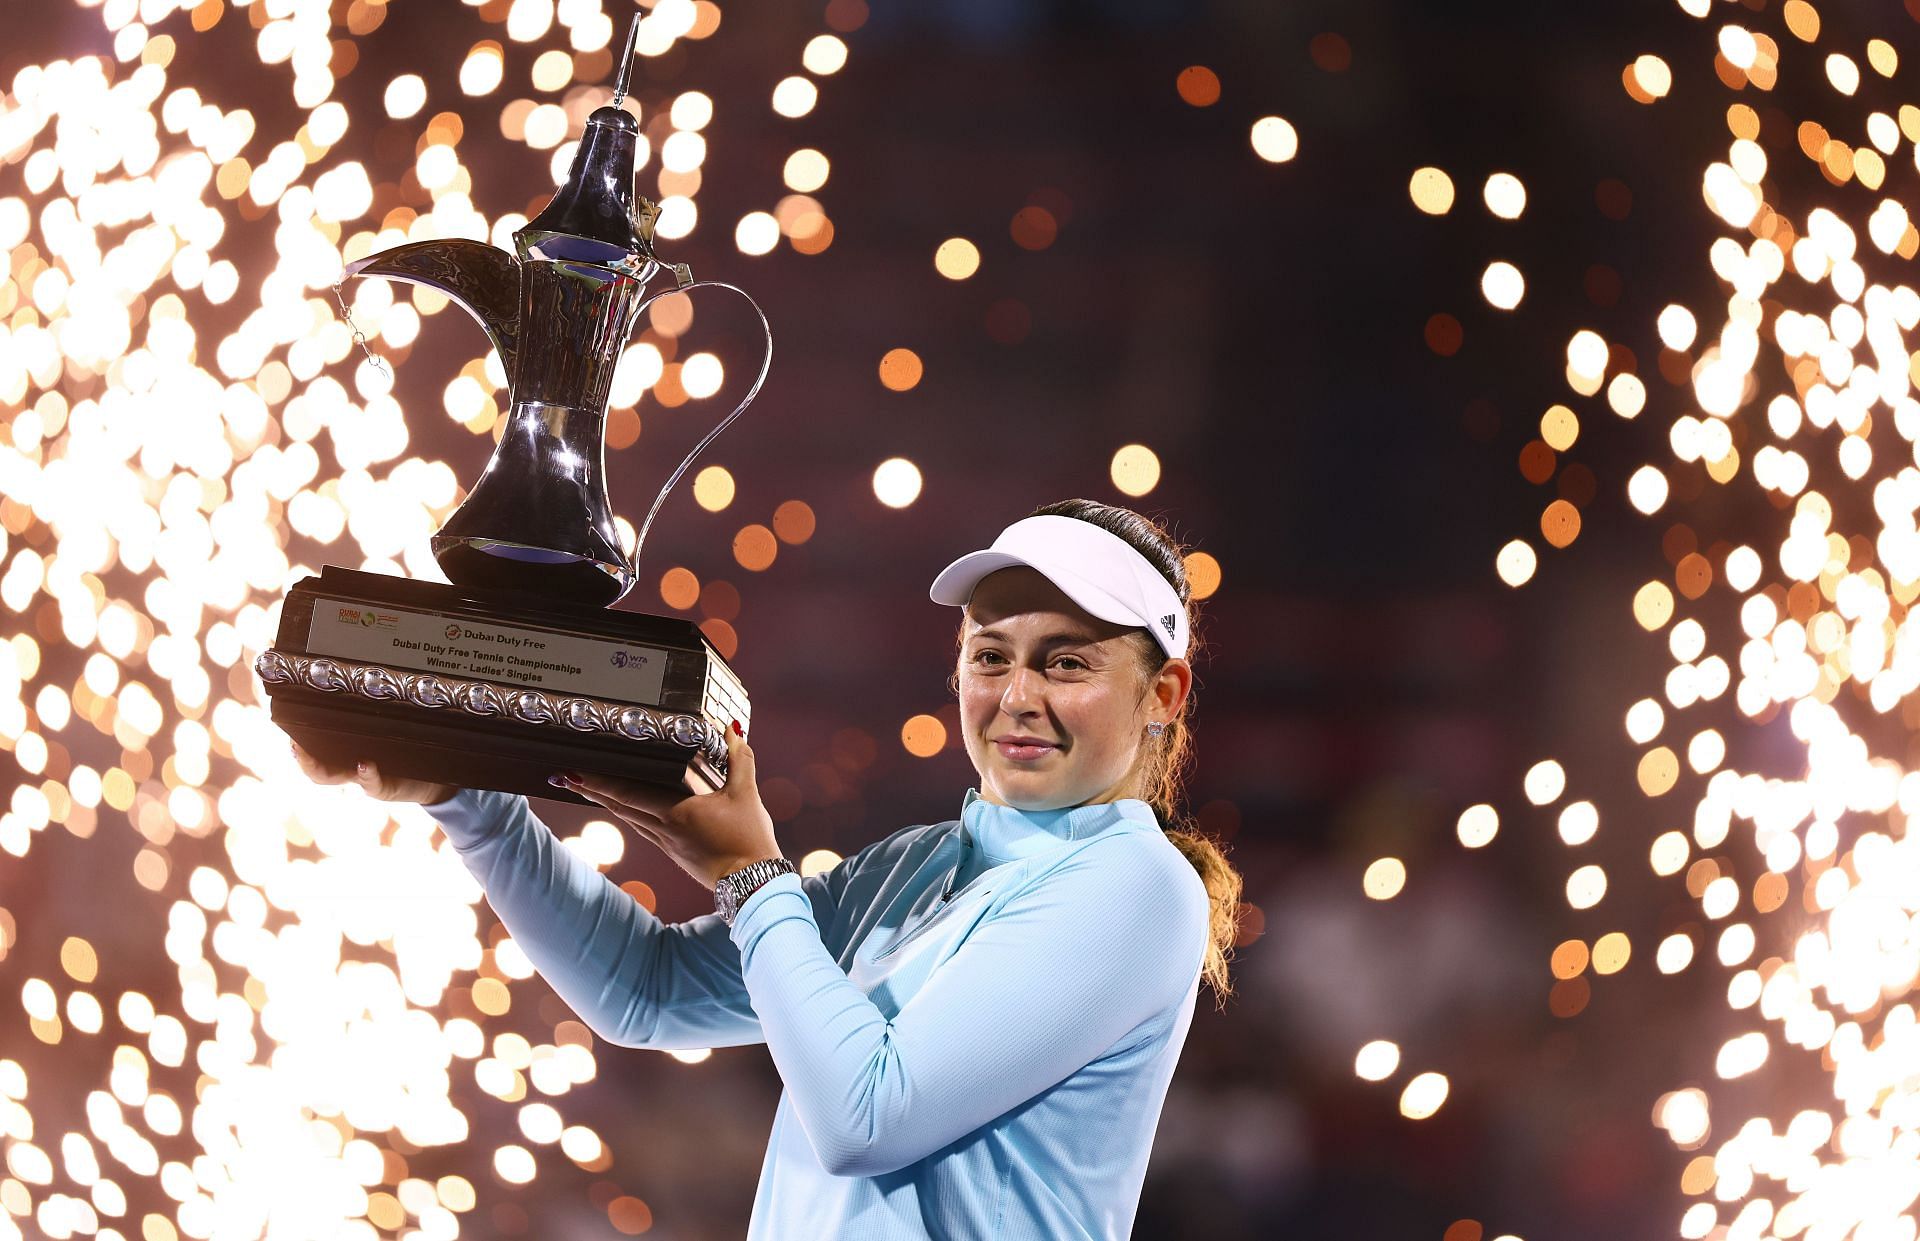 Jelena Ostapenko at the 2022 Dubai Open.